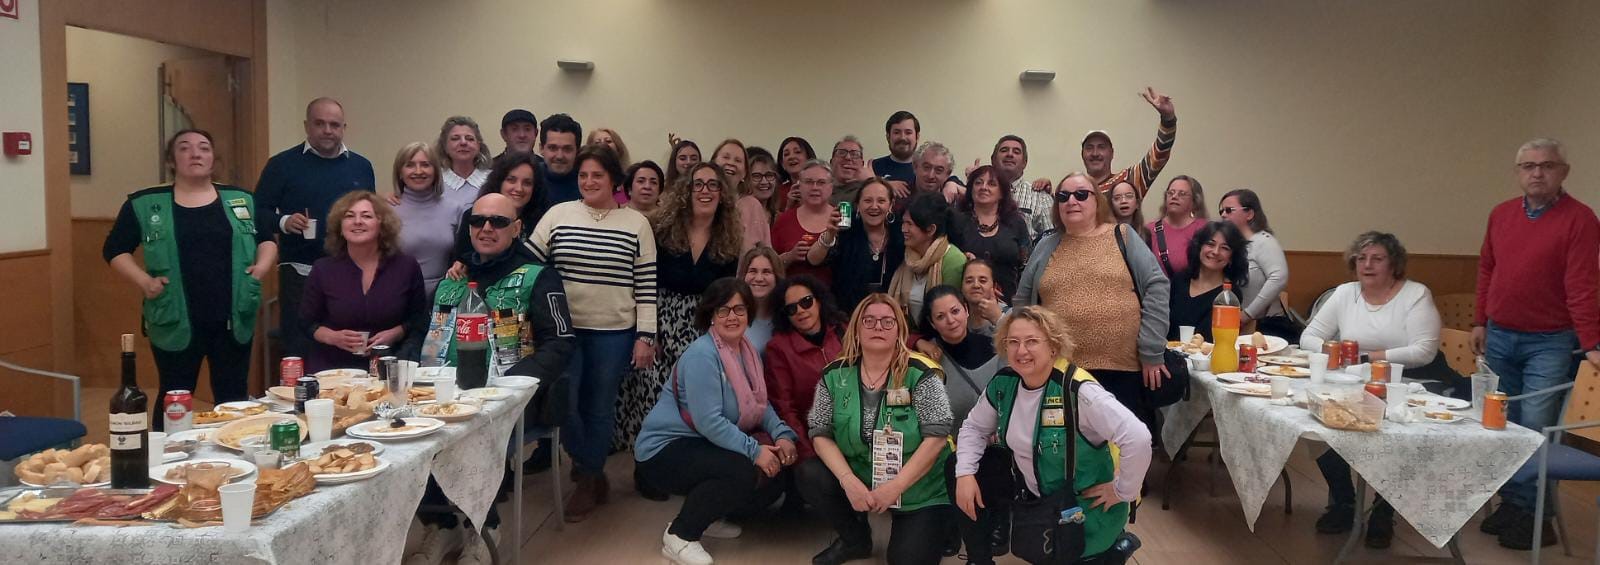 Almuerzo y tertulia feminista el 8-M en la ONCE de Jaén